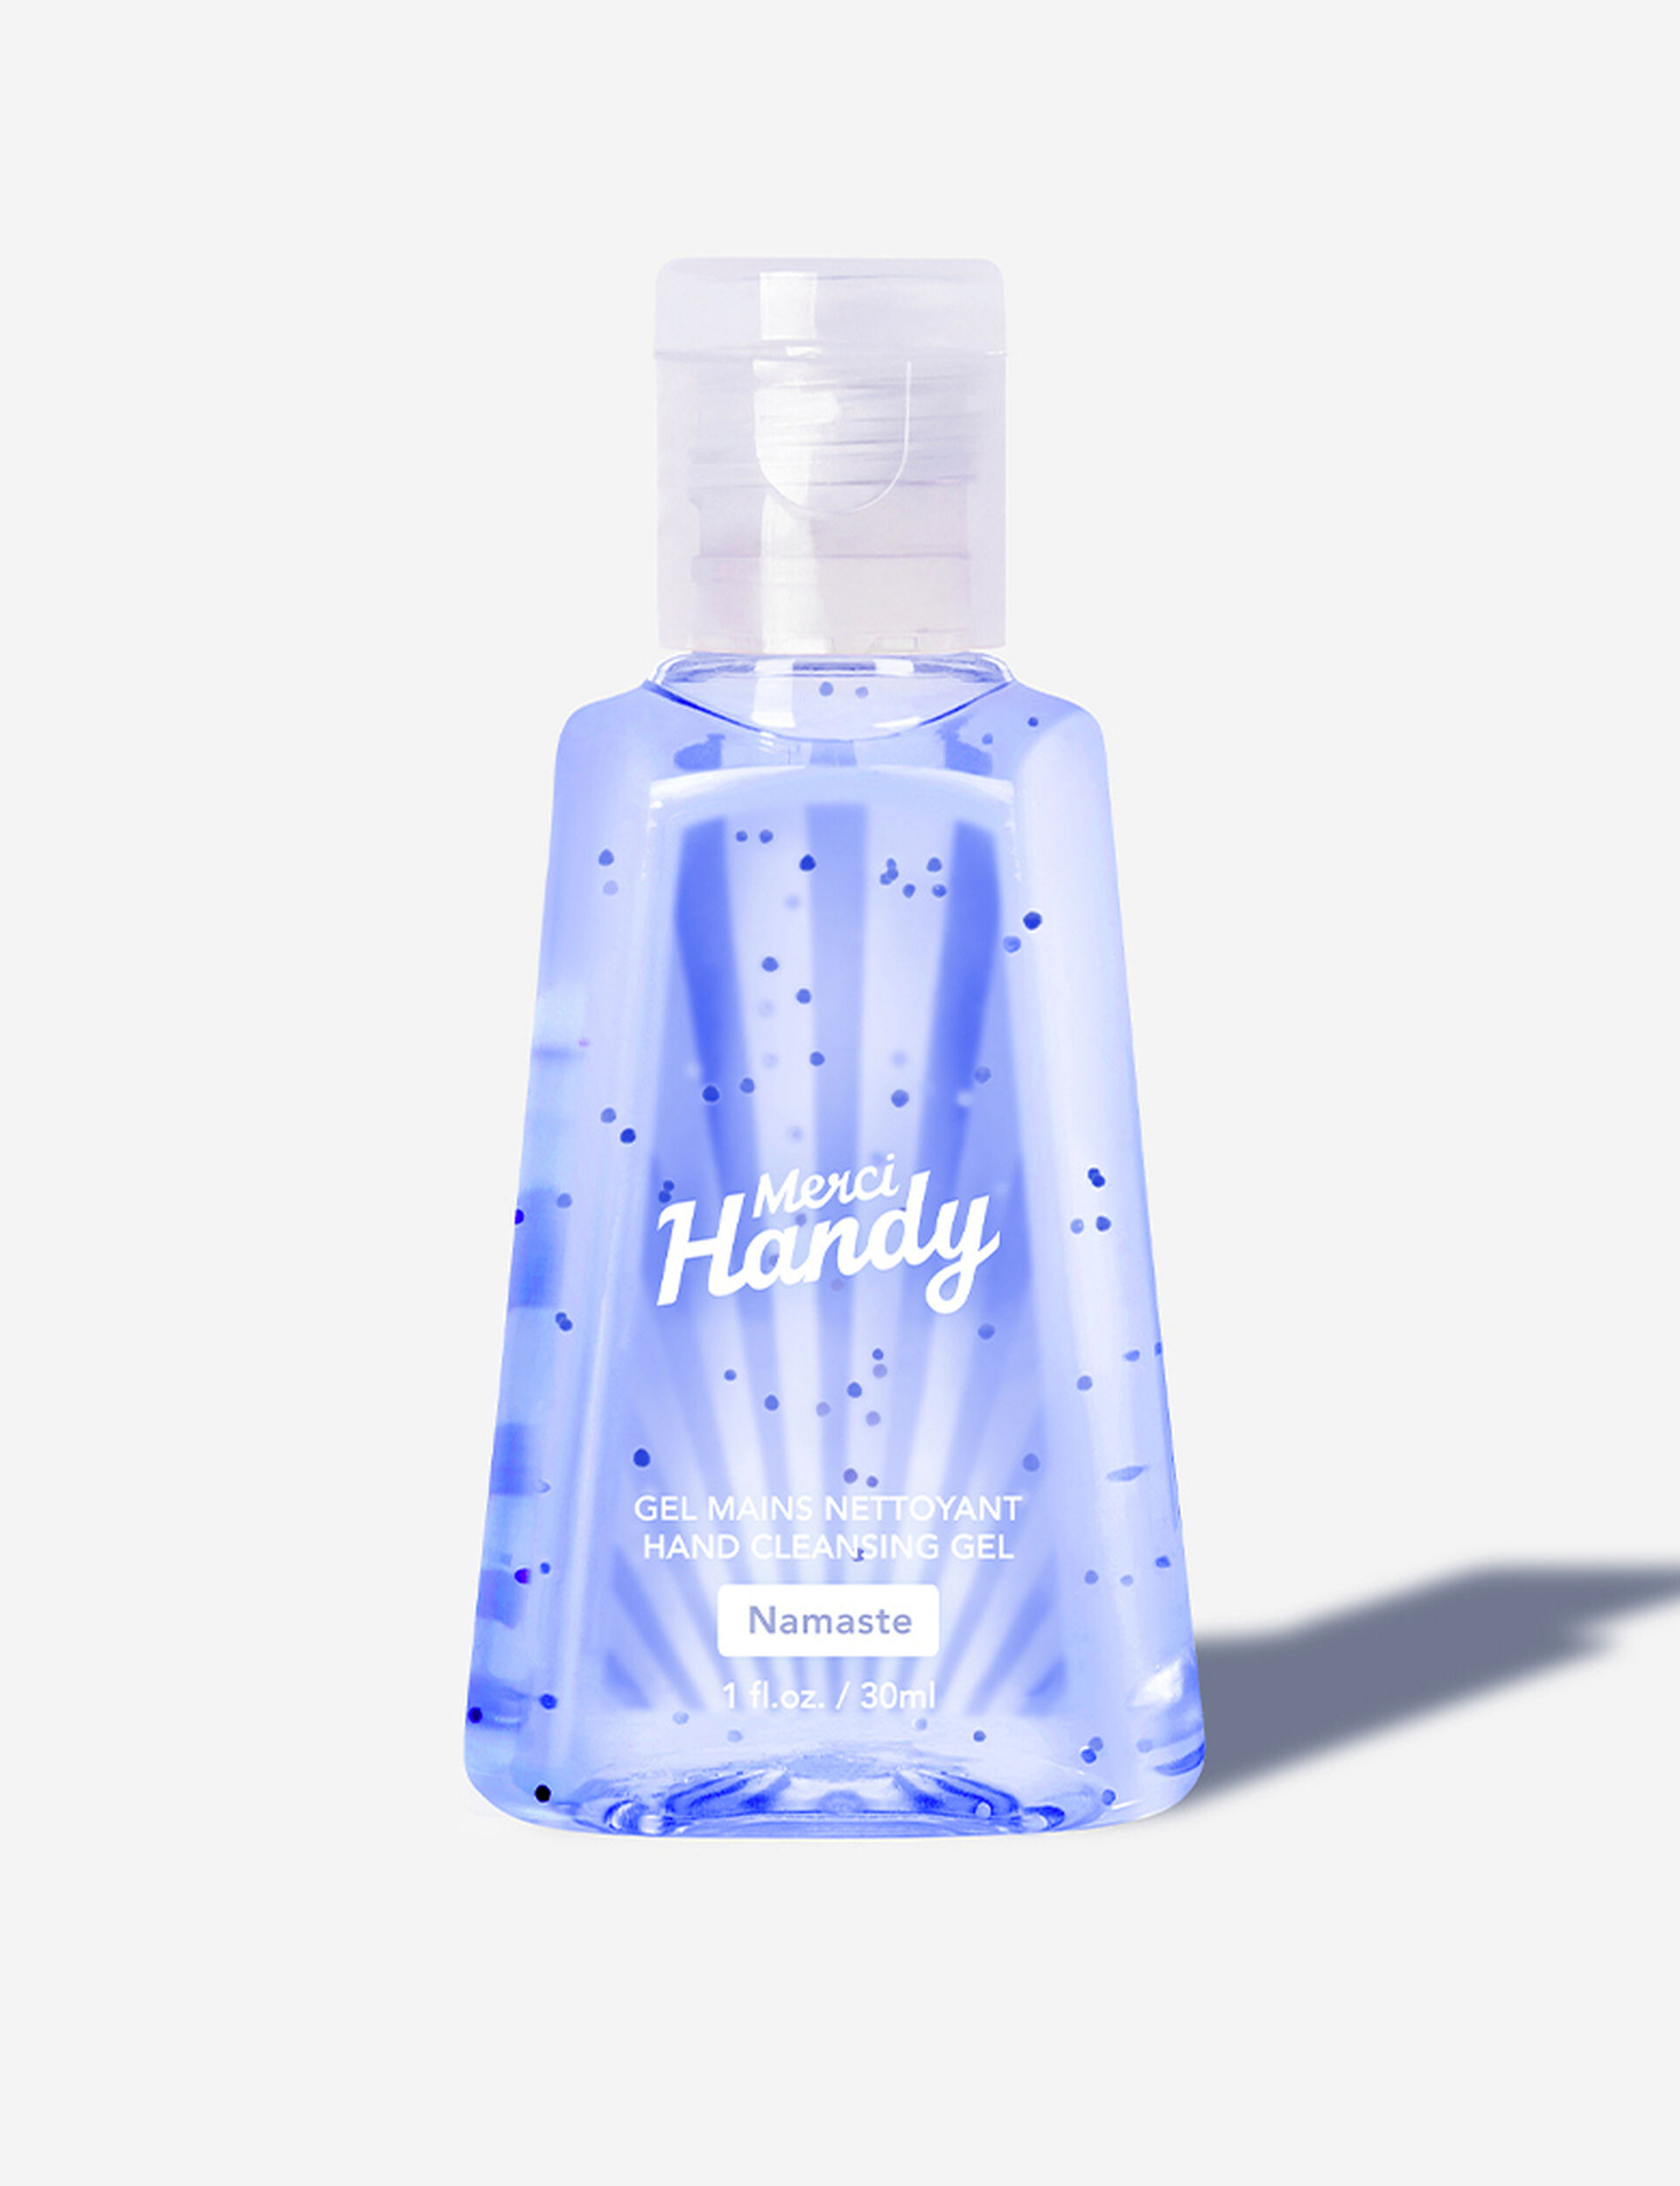 Namaste handwash gel